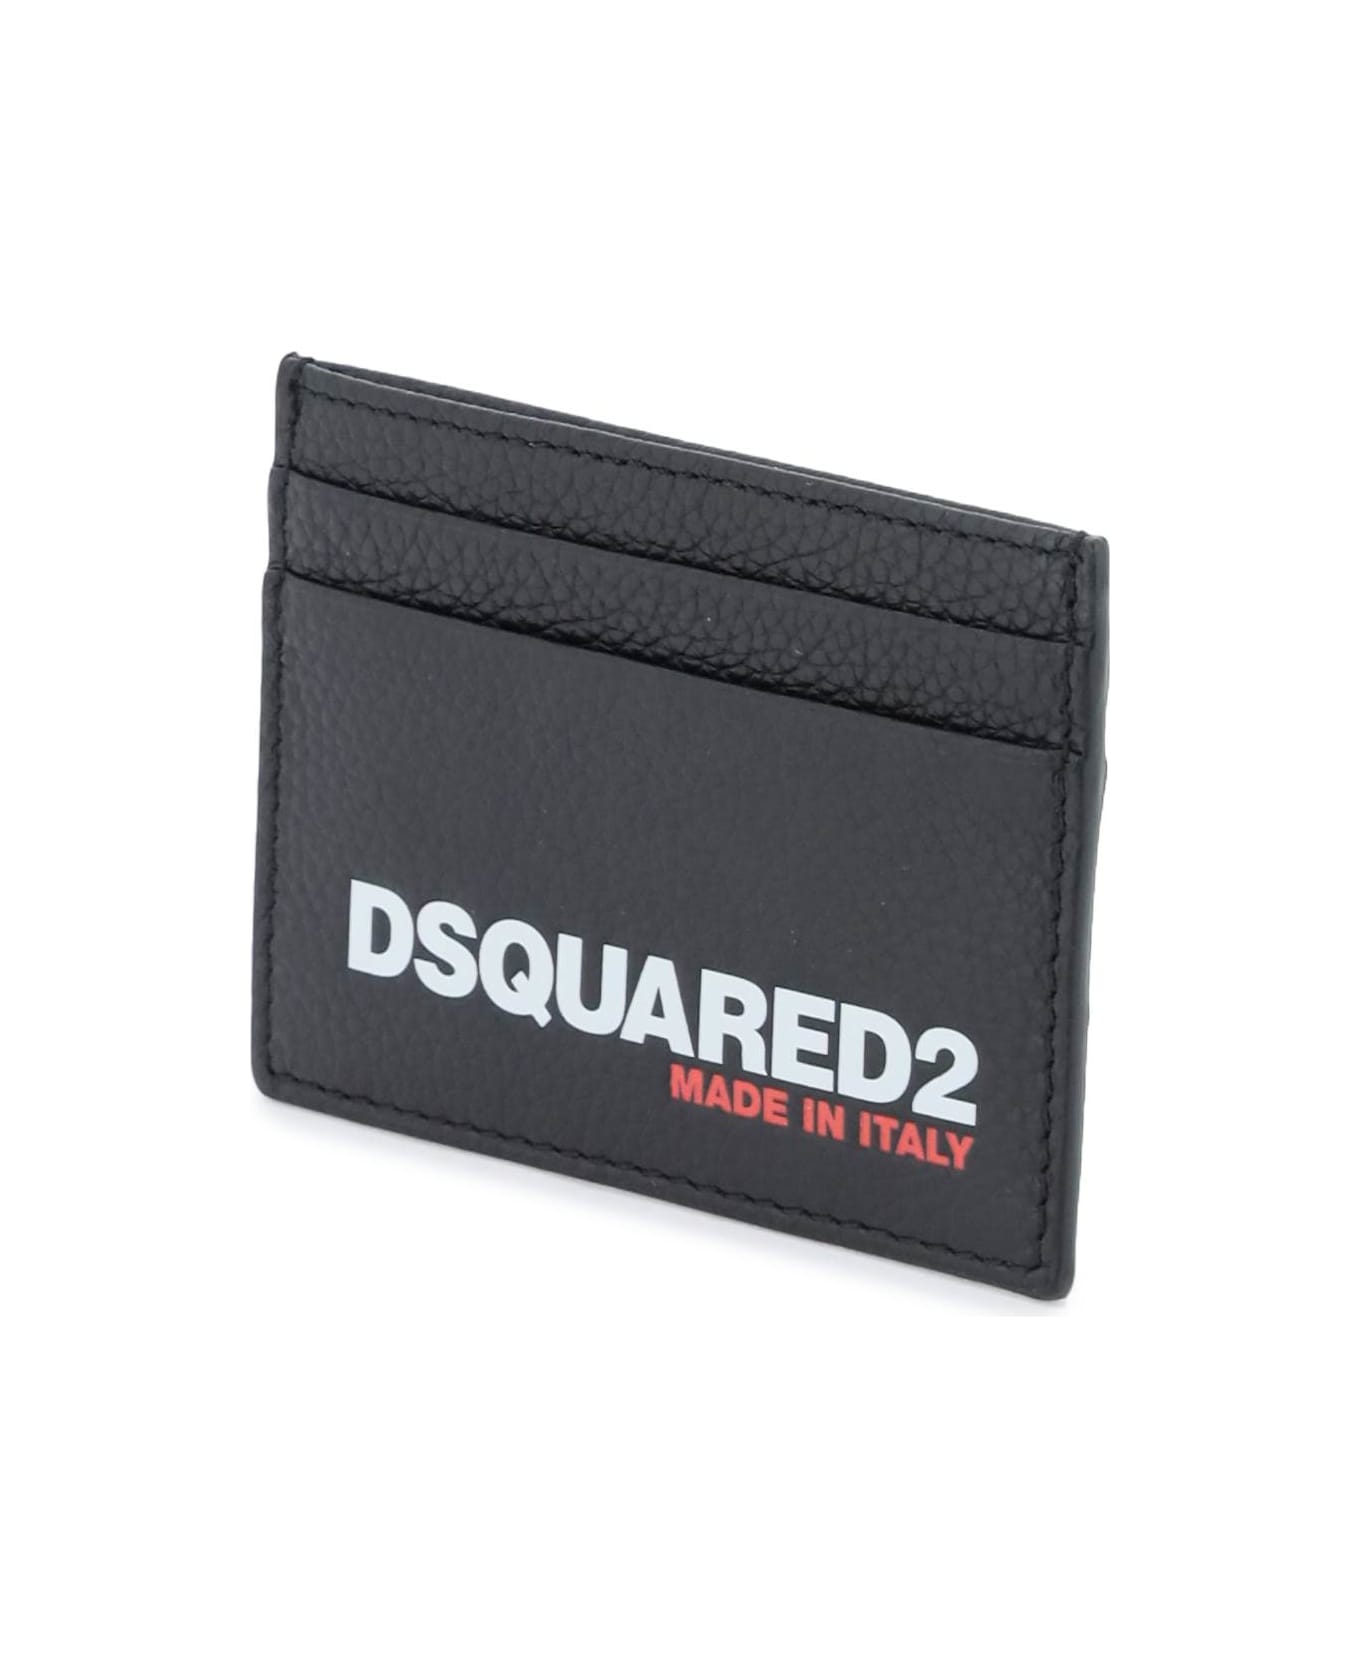 Dsquared2 Bob Credit Card Holder - 2124